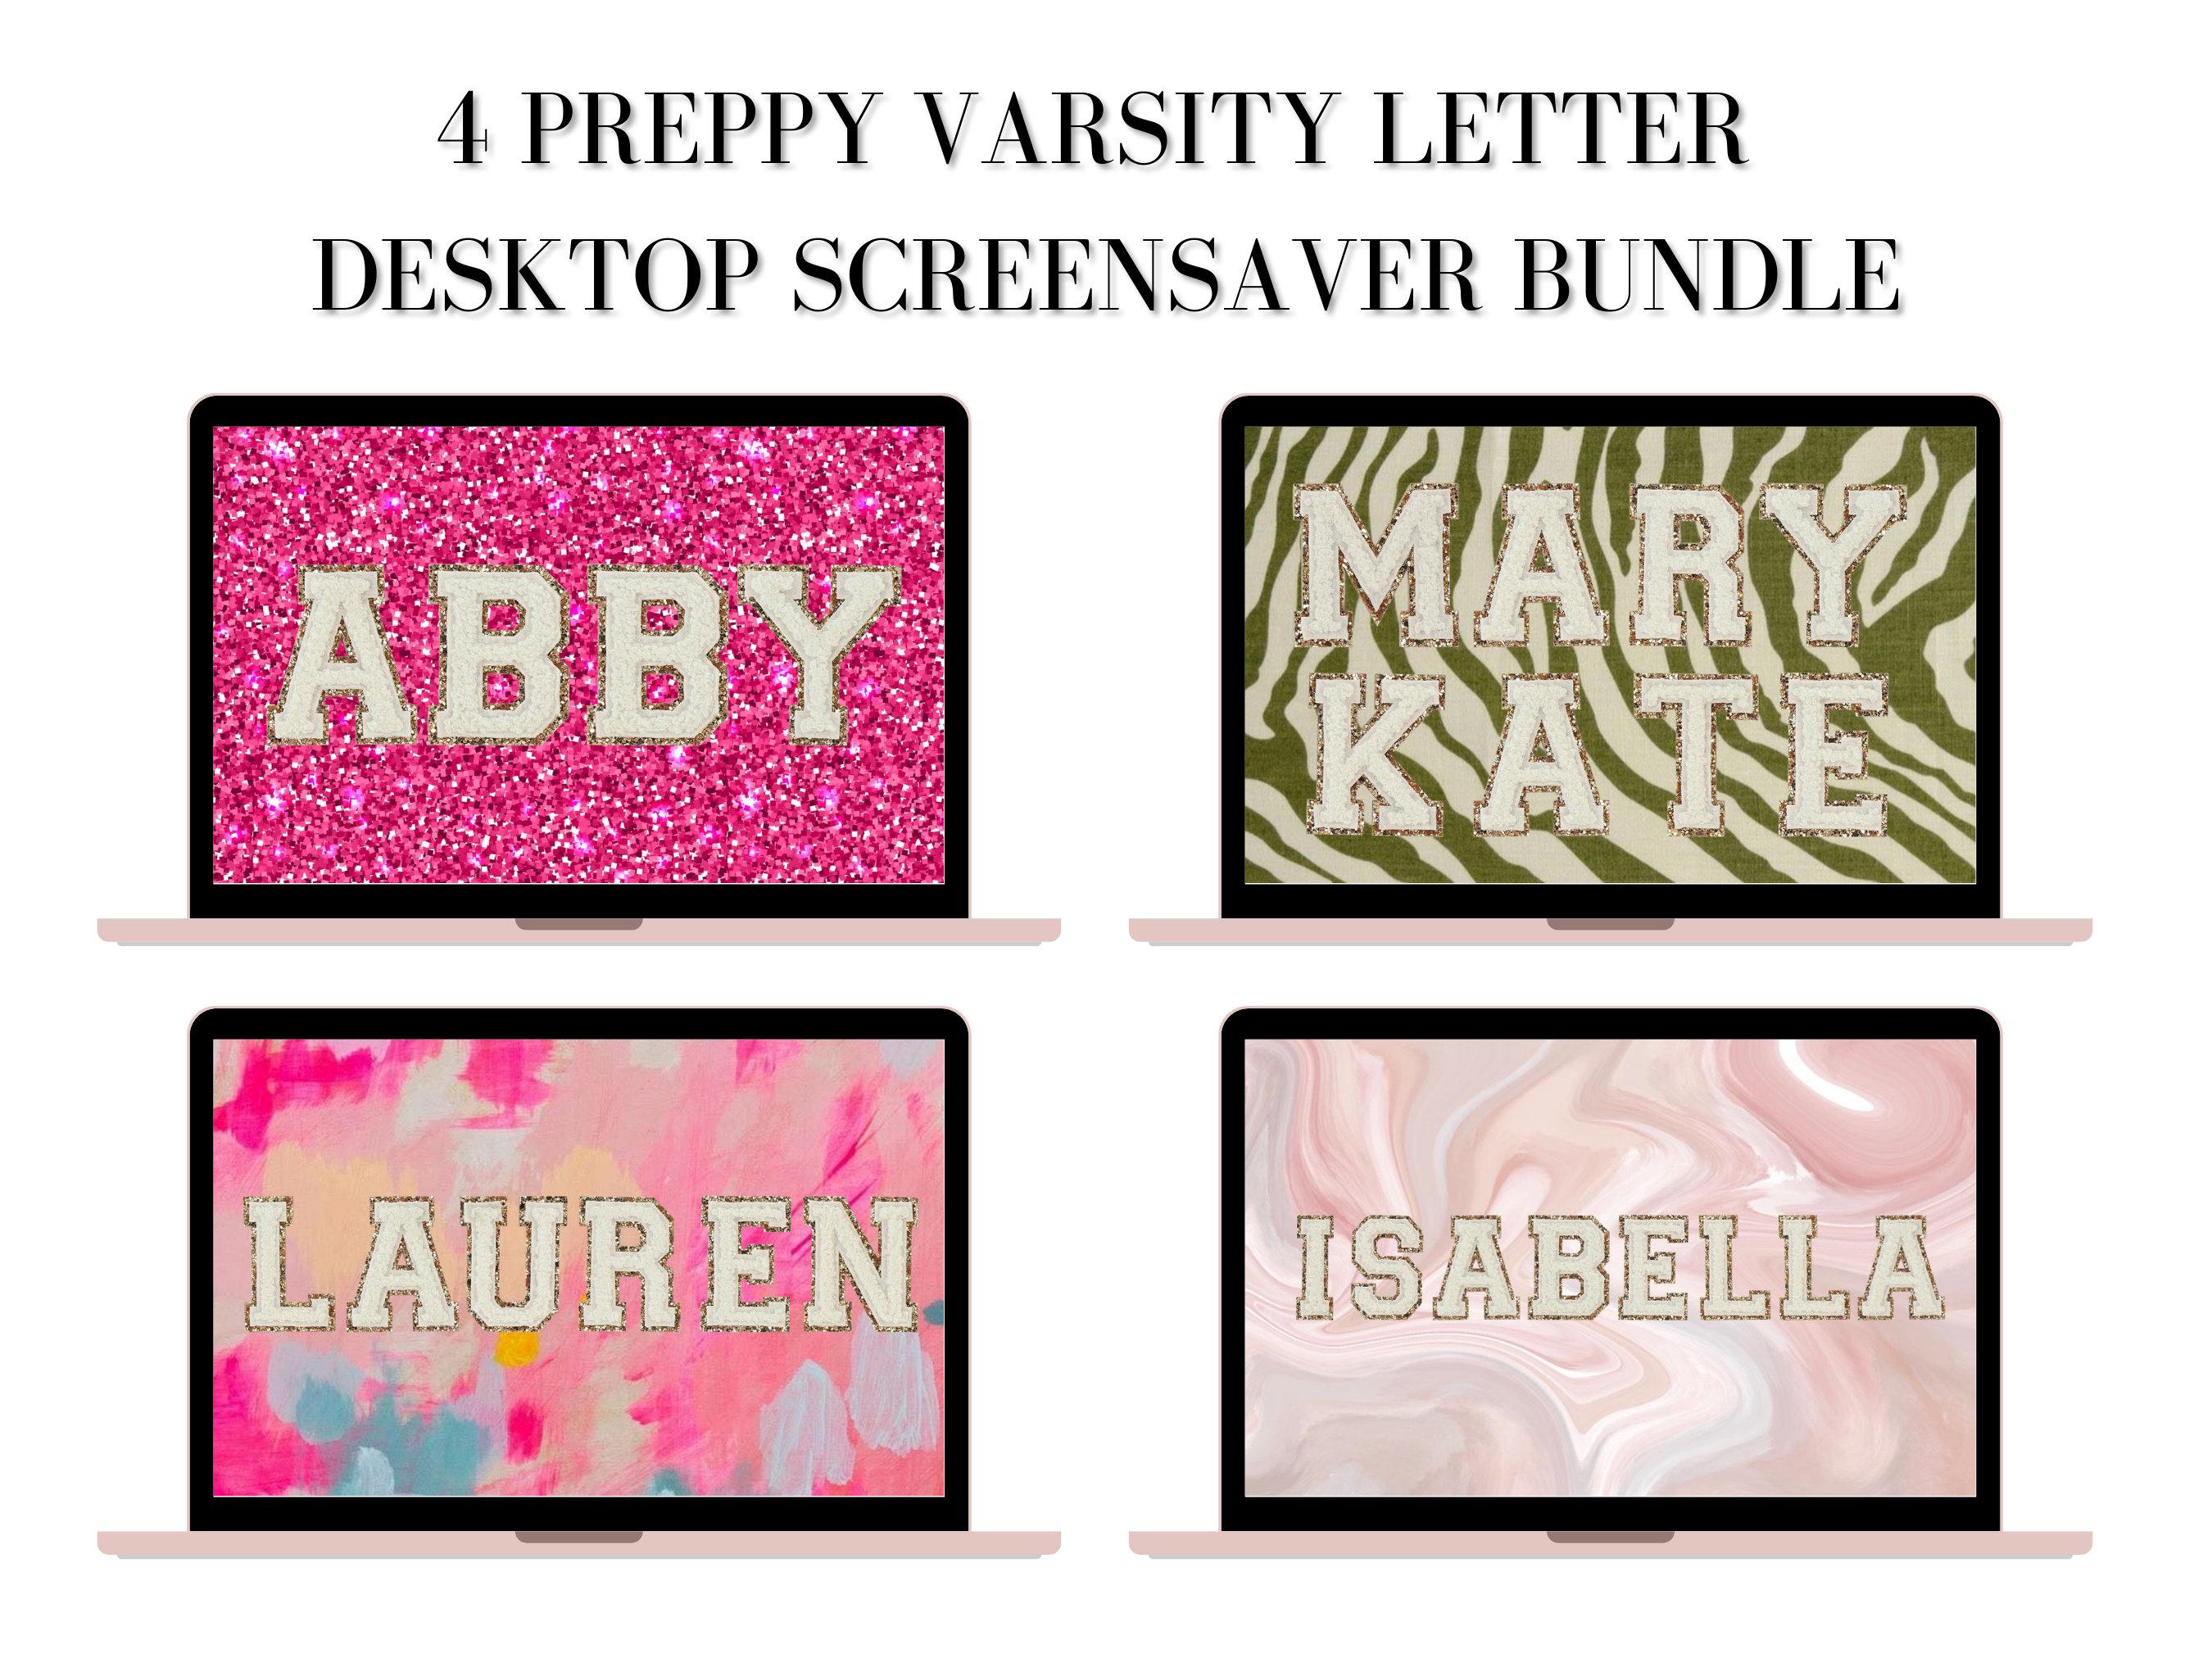 Preppy Varsity Letter Desktop Screensaver Bundle includes All